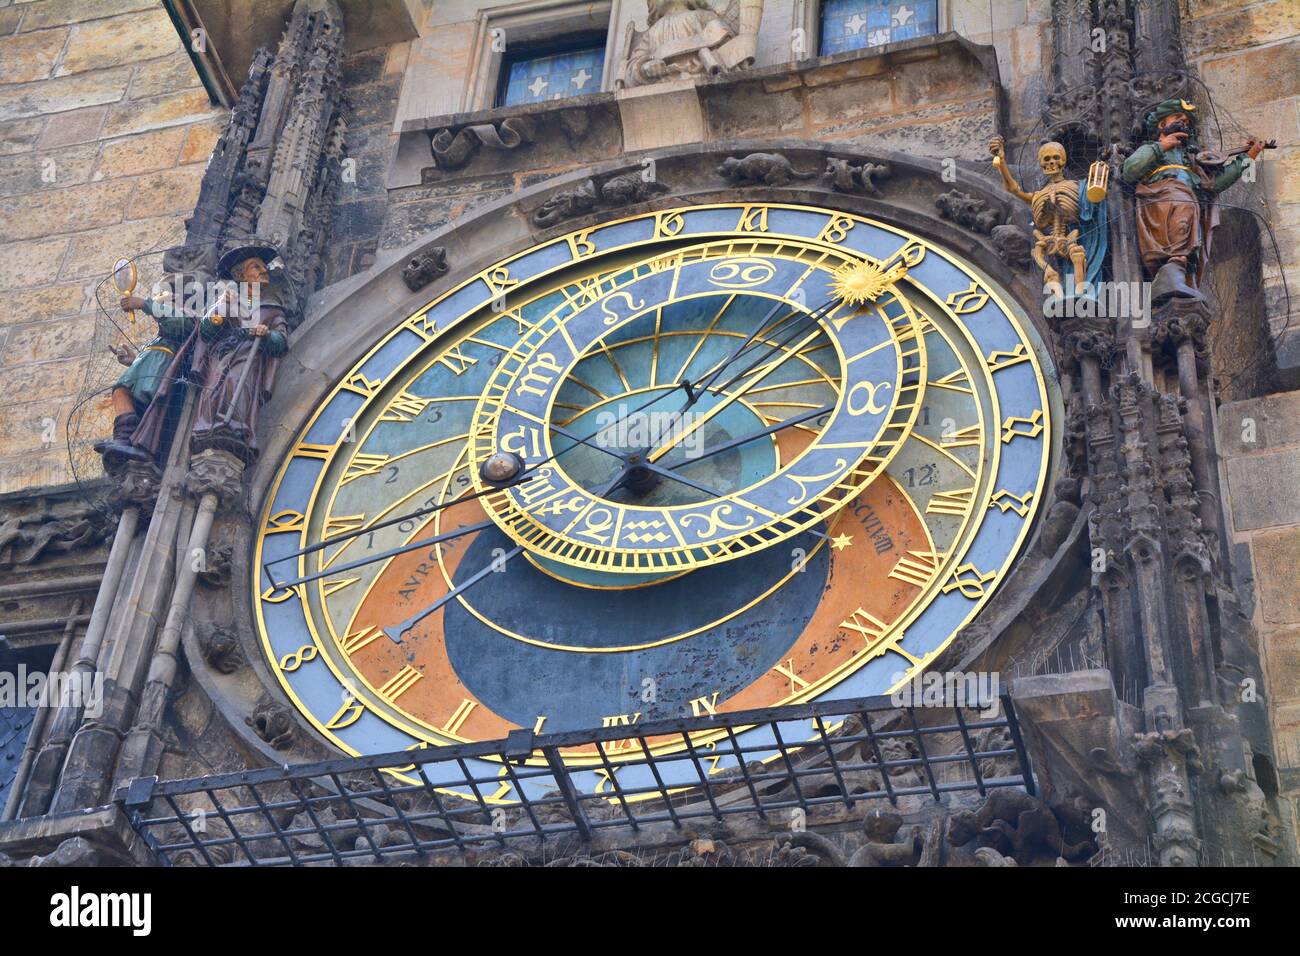 Nahaufnahme der astronomischen Uhr am Rathaus auf dem Altstädter Ring in Prag. Berühmte Touristenattraktion. Stockfoto